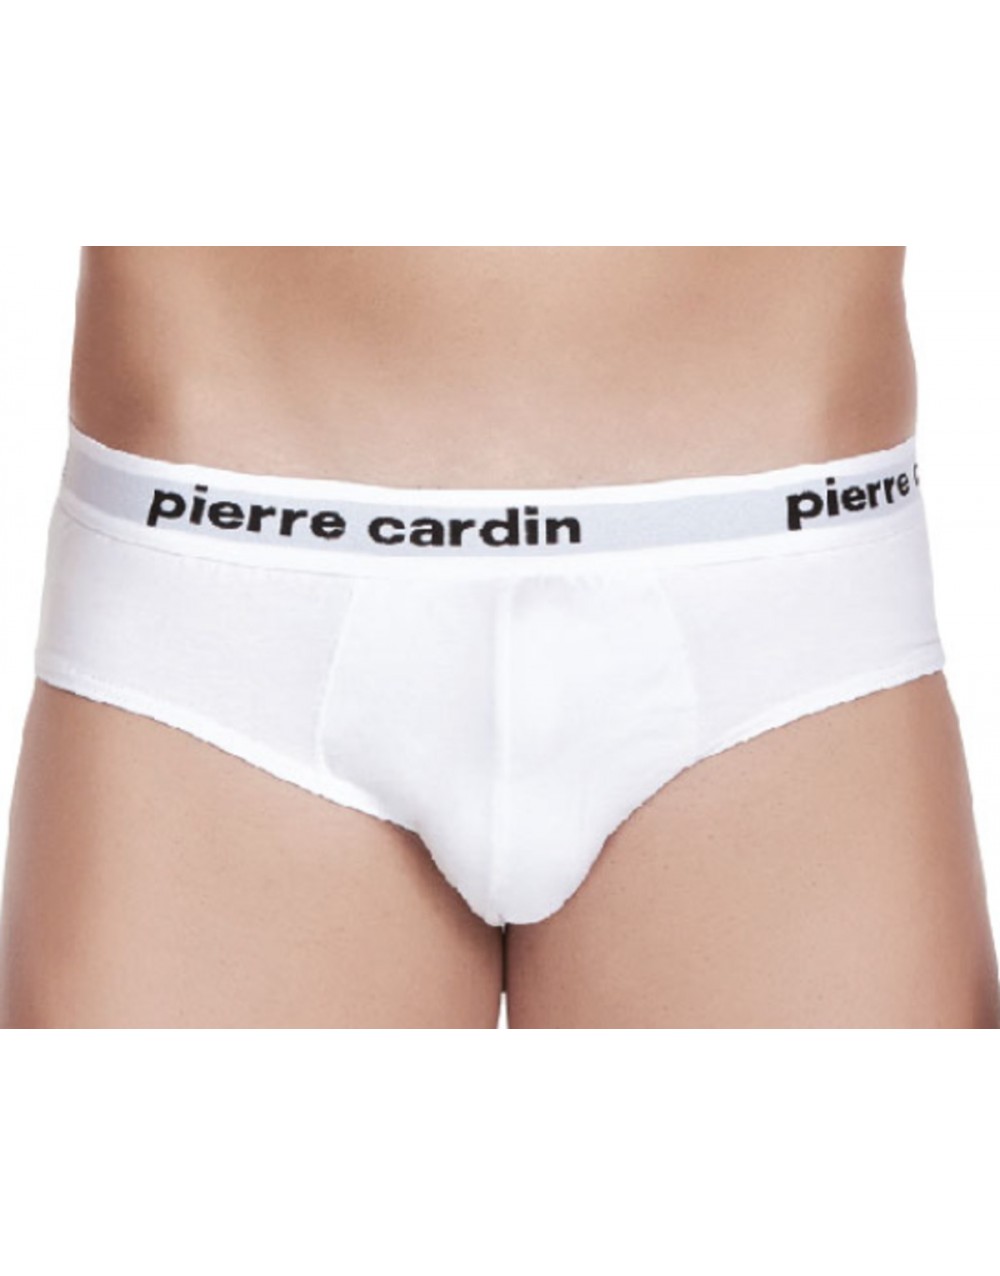 Confezione 3 Slip uomo elastico esterno colori bianco nero assortito(nero-grigiomelange-marine) PCU 102 - Pierre Cardin